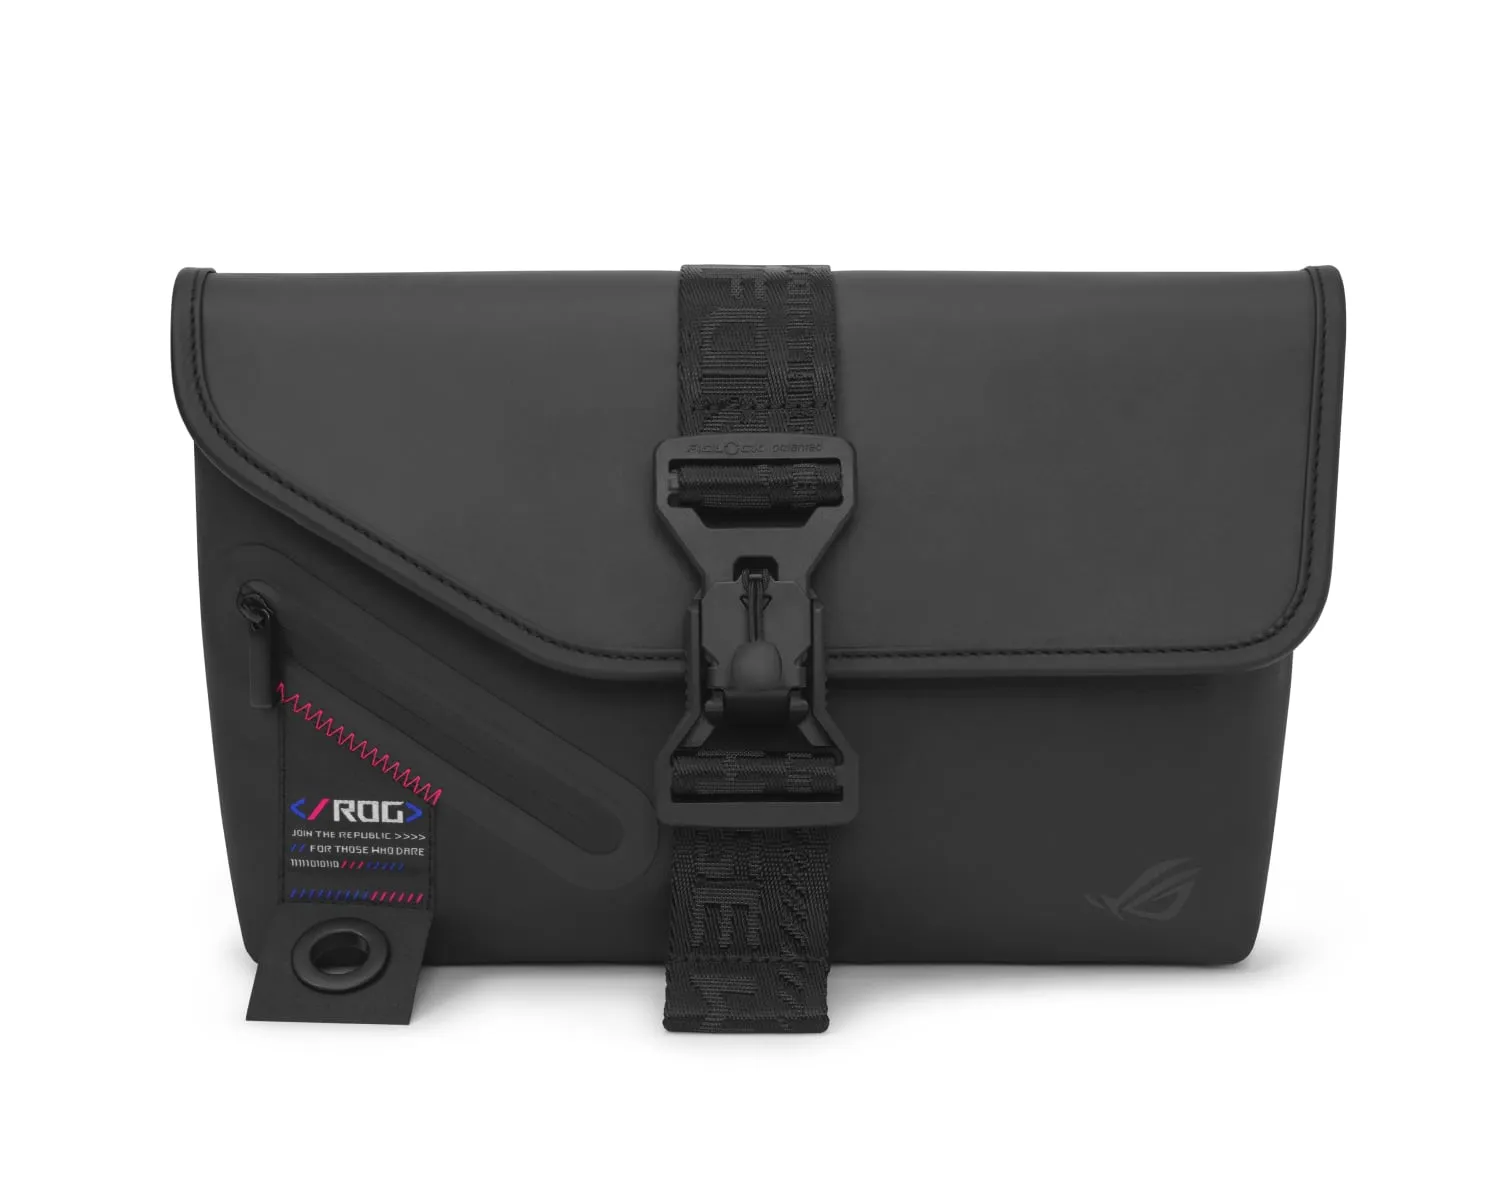 ROG SLASH Sling Bag 2.0 with carry strap hidden, on a black background